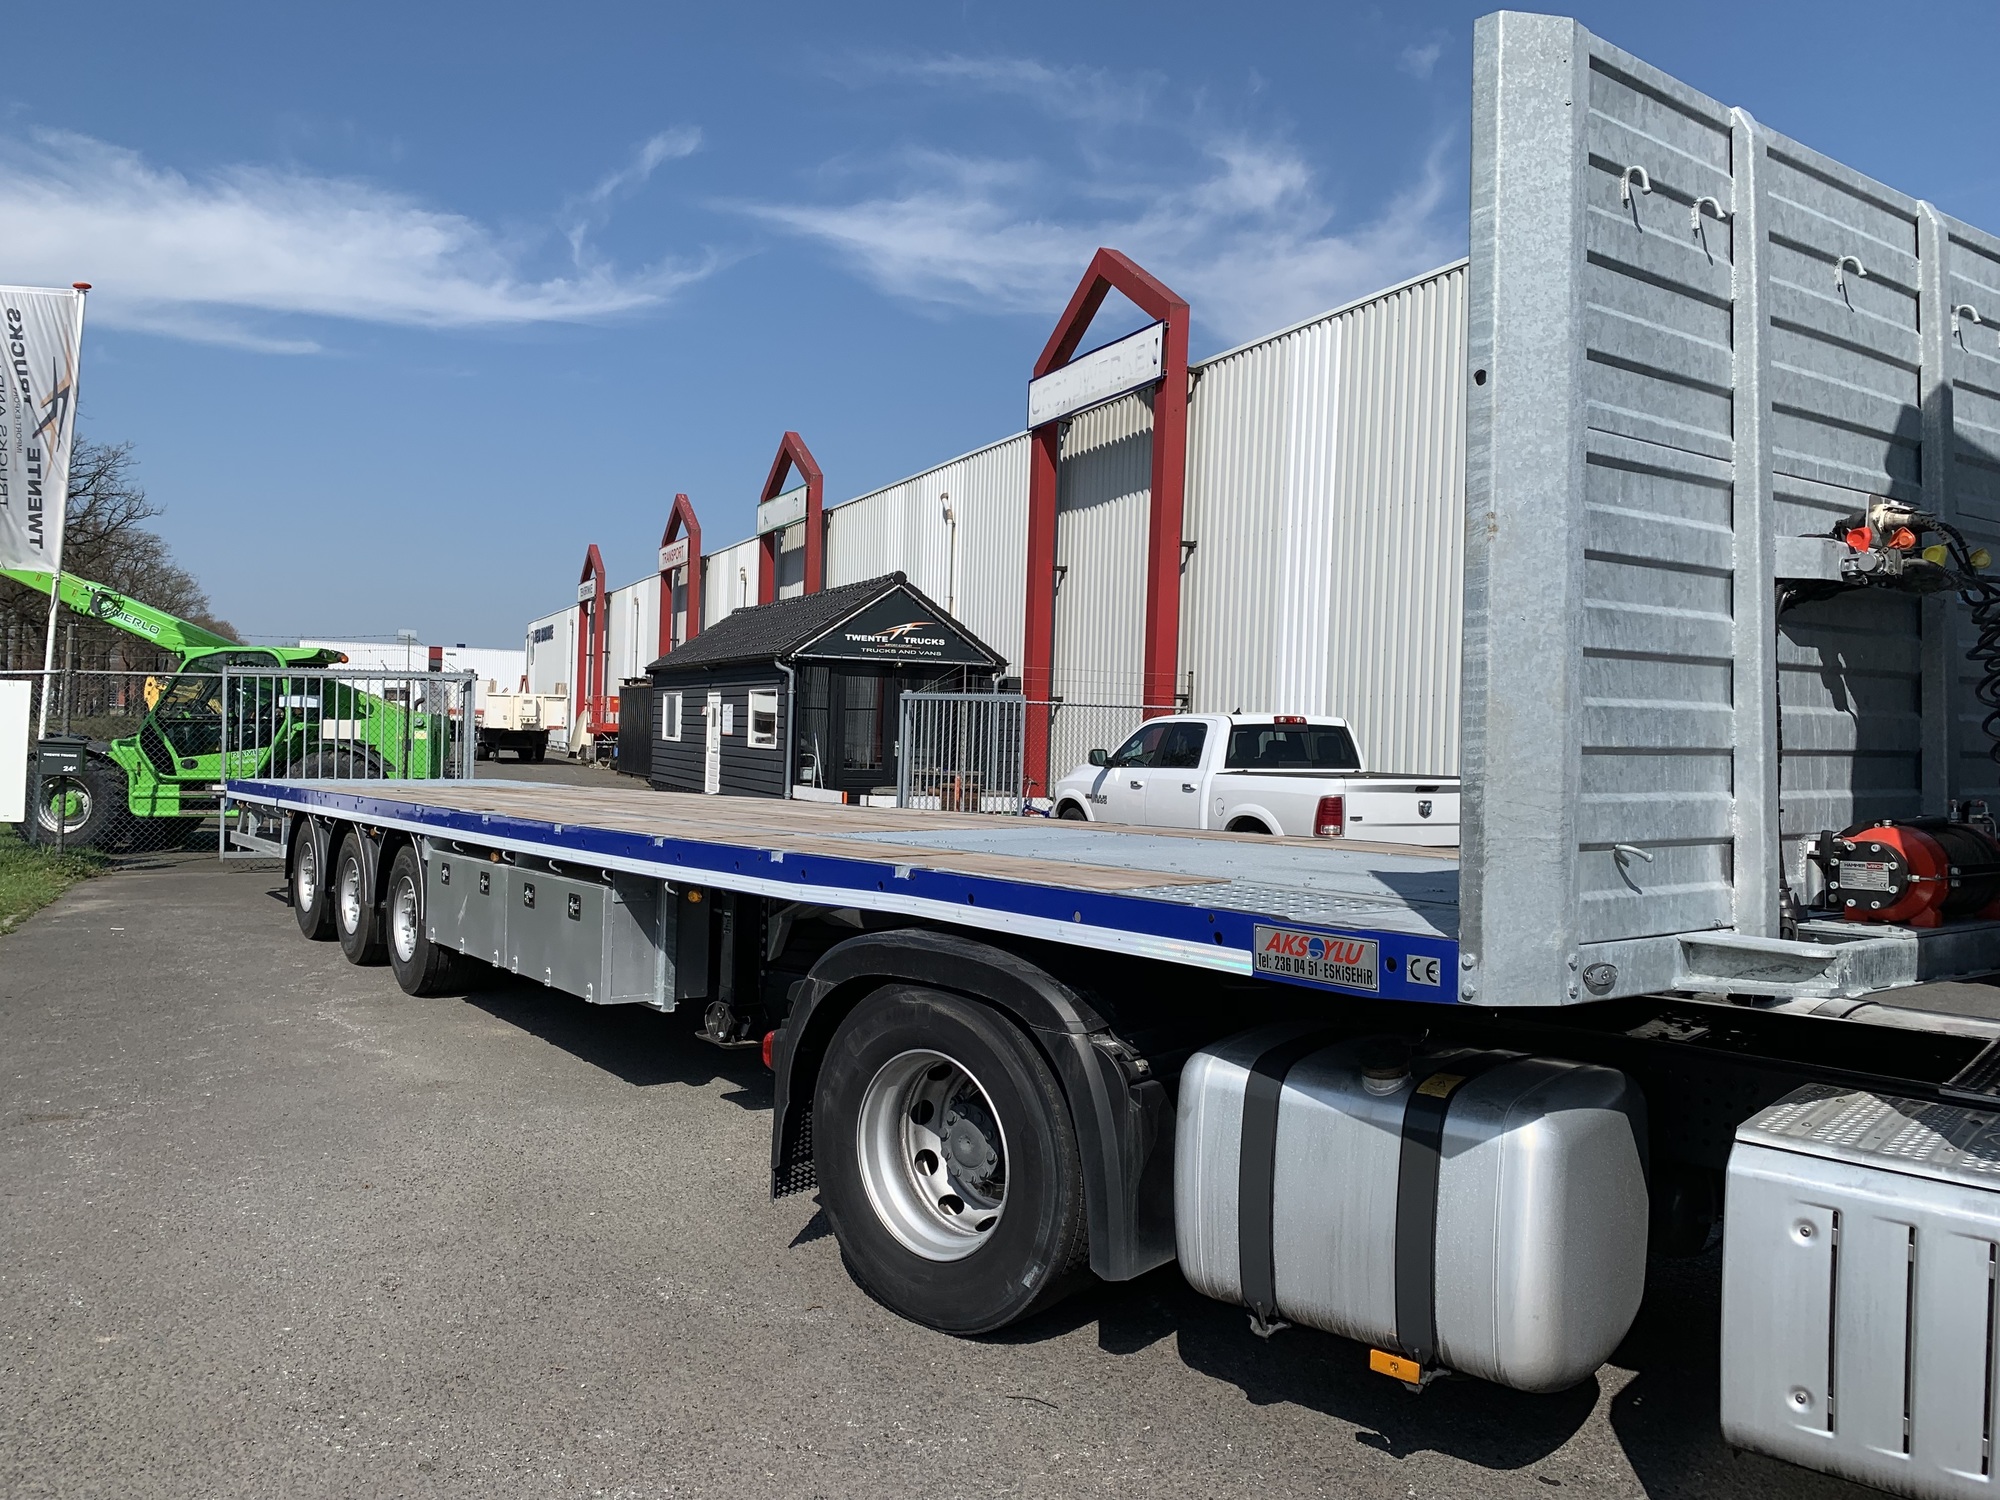 Twente Trucks undefined: bild 2